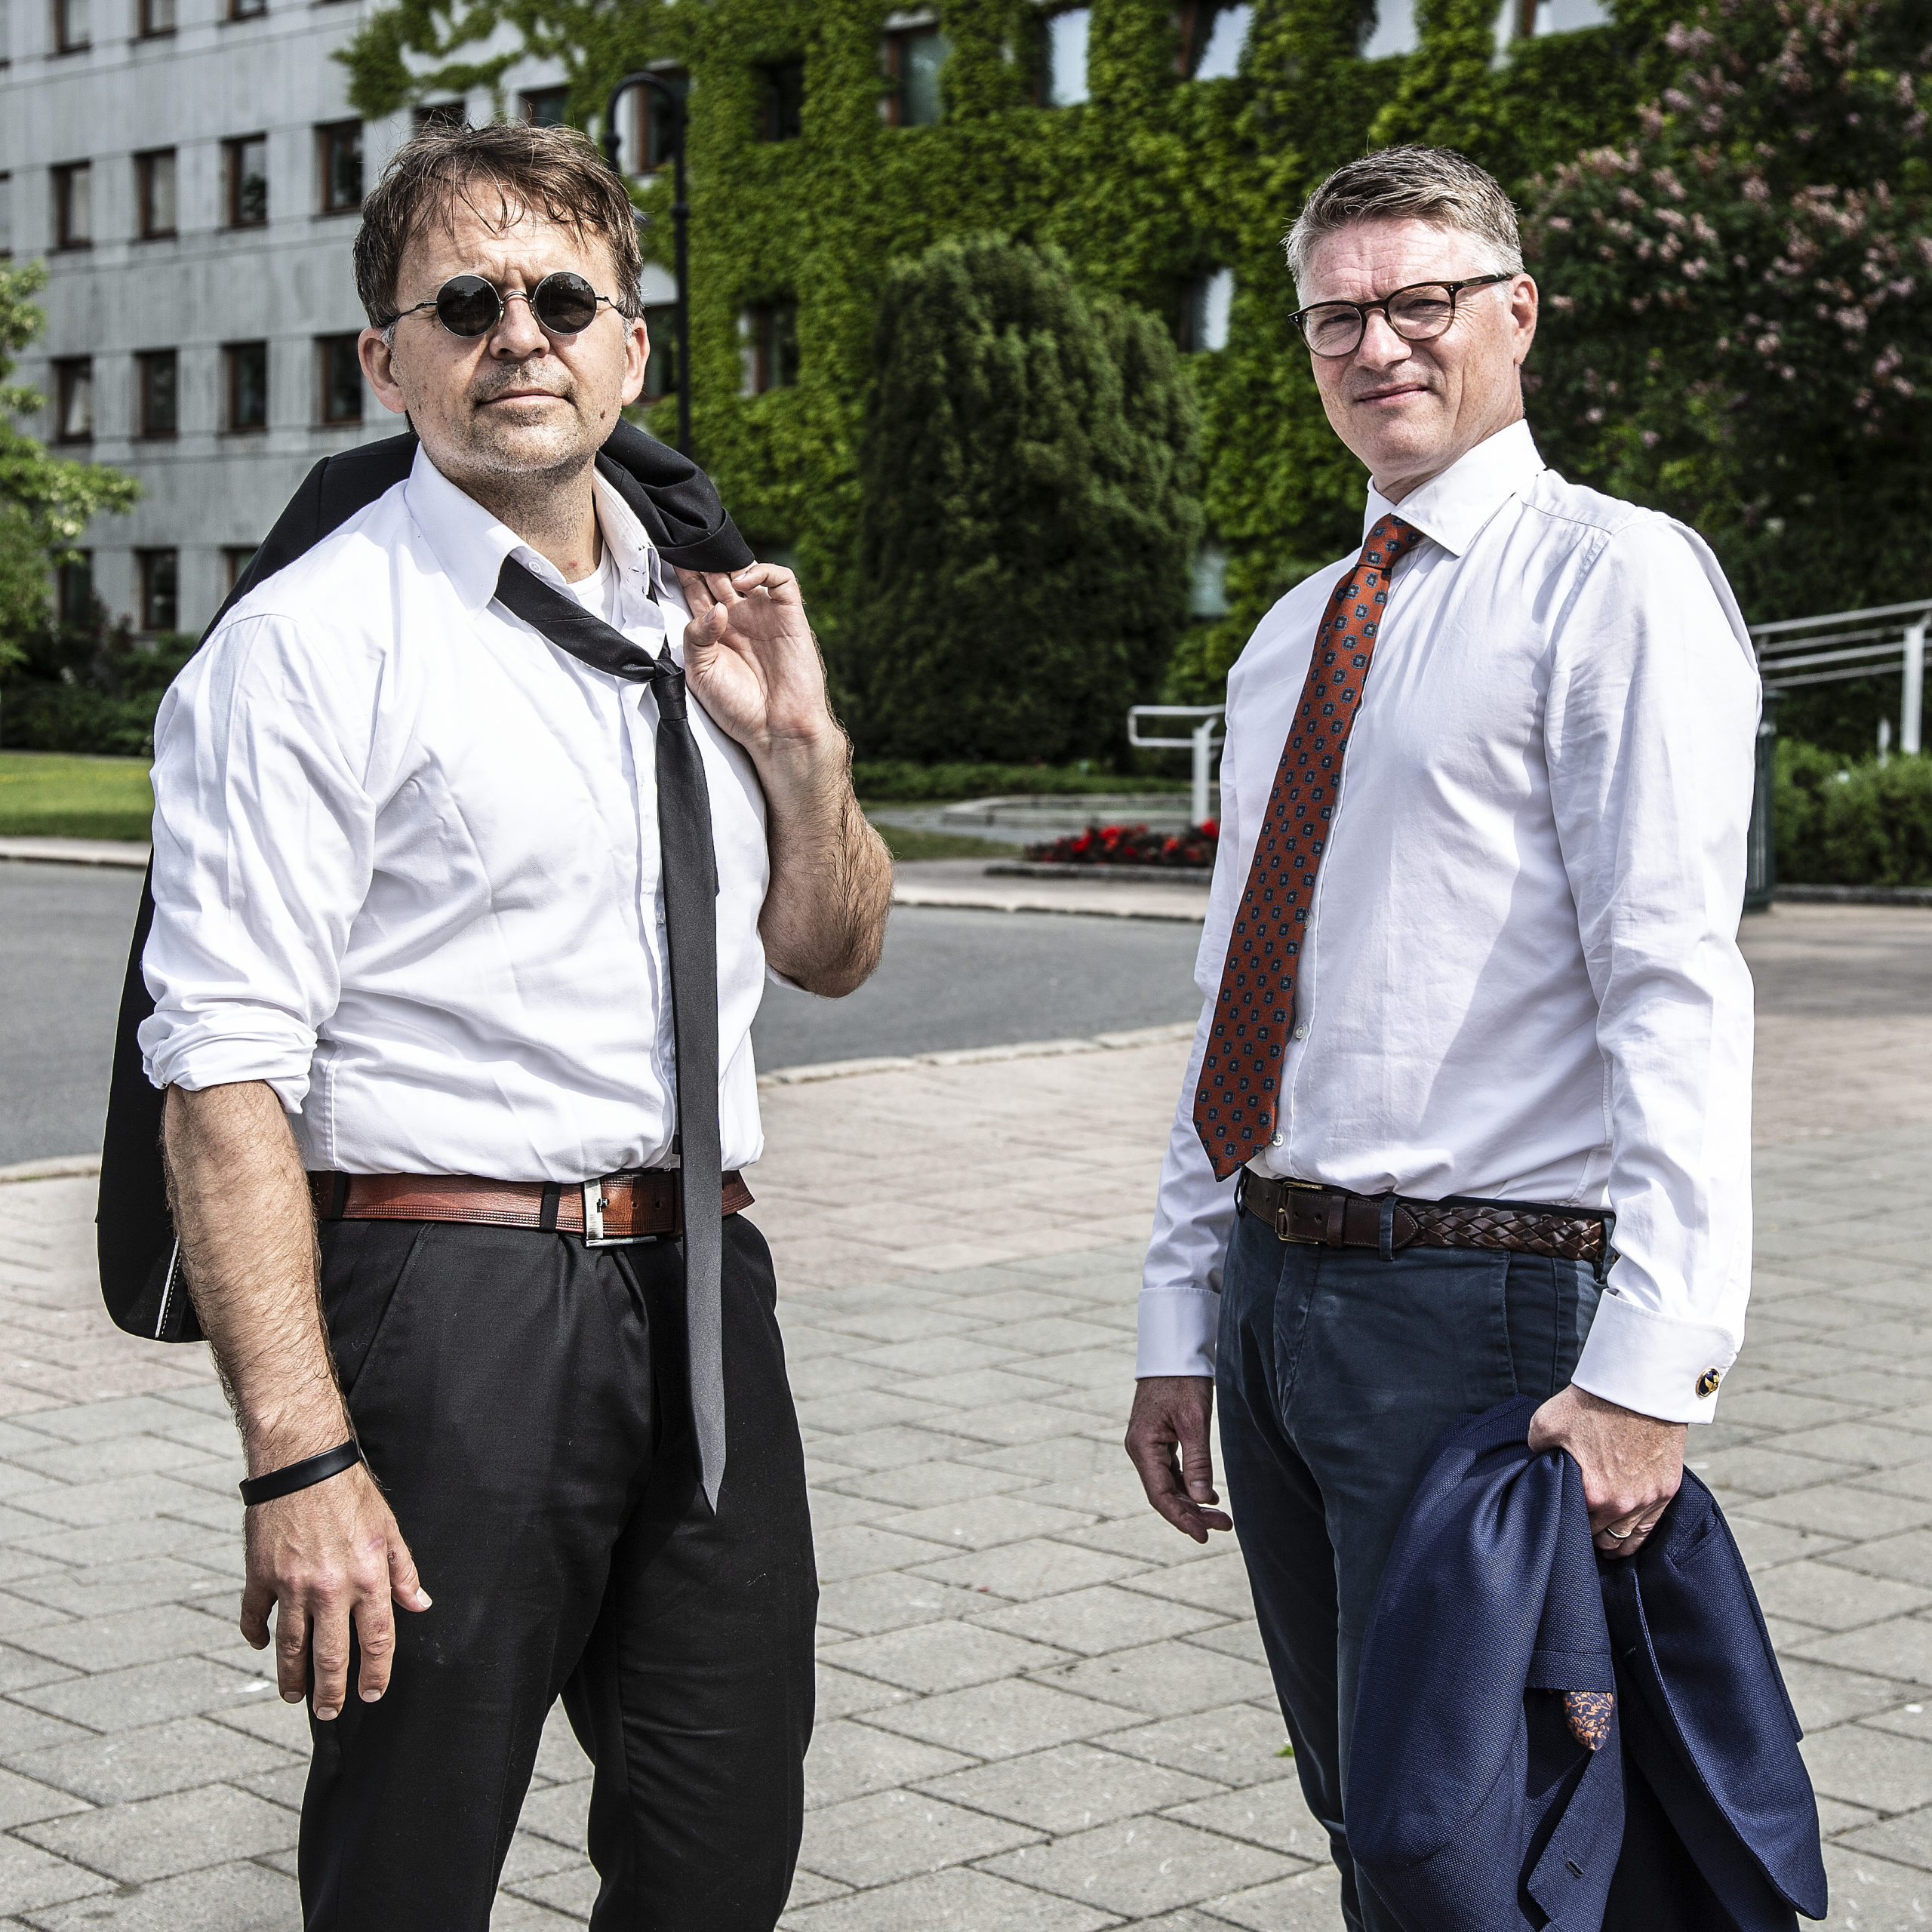 Gjermund og Shaun I "Popkorn og politikk", utenfor NRK huset.